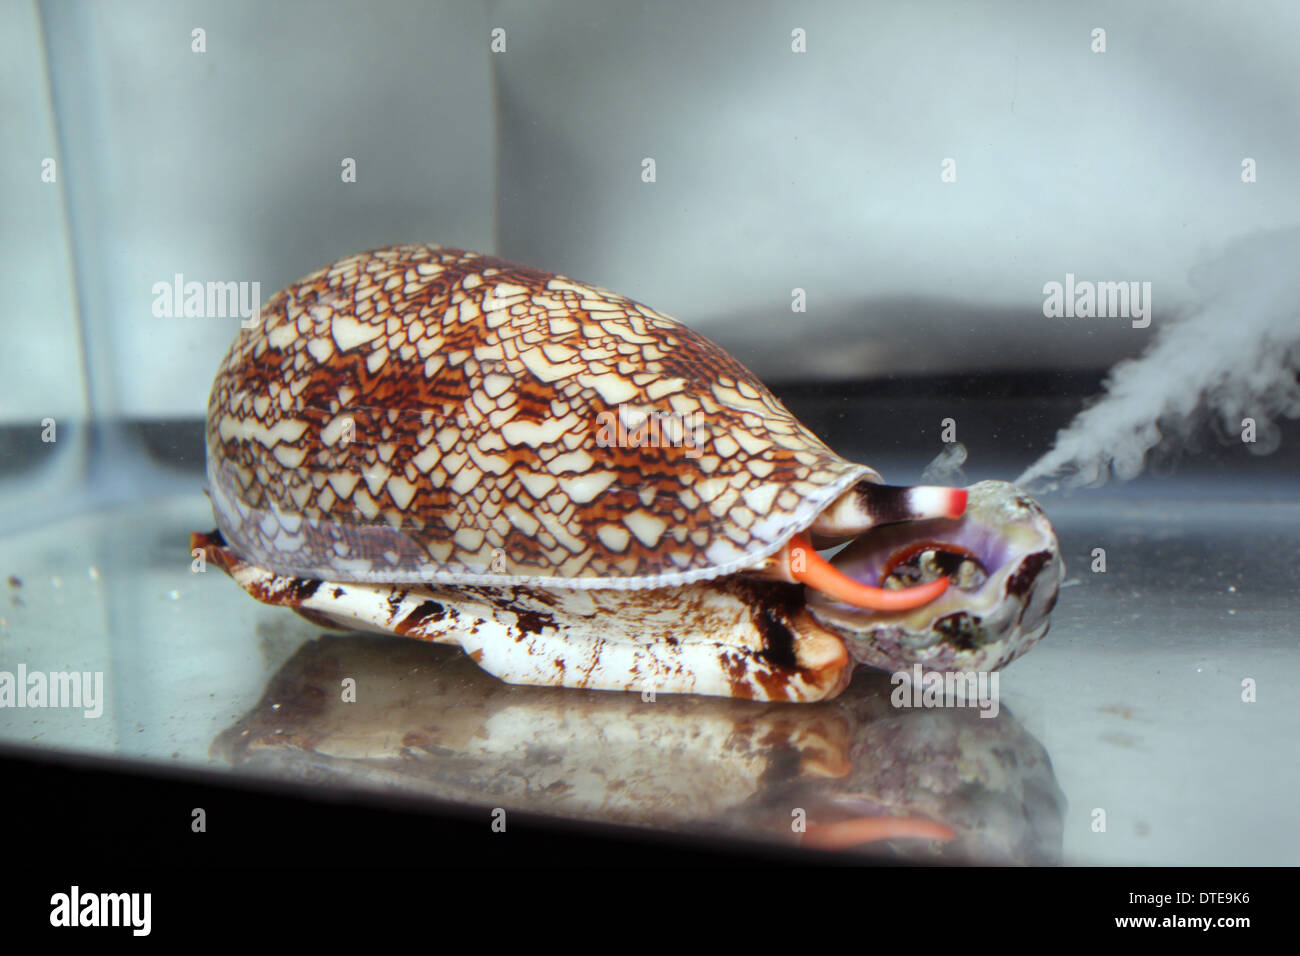 A textile cone snail (Conus textile) injects venom into its gastropod prey. Stock Photo